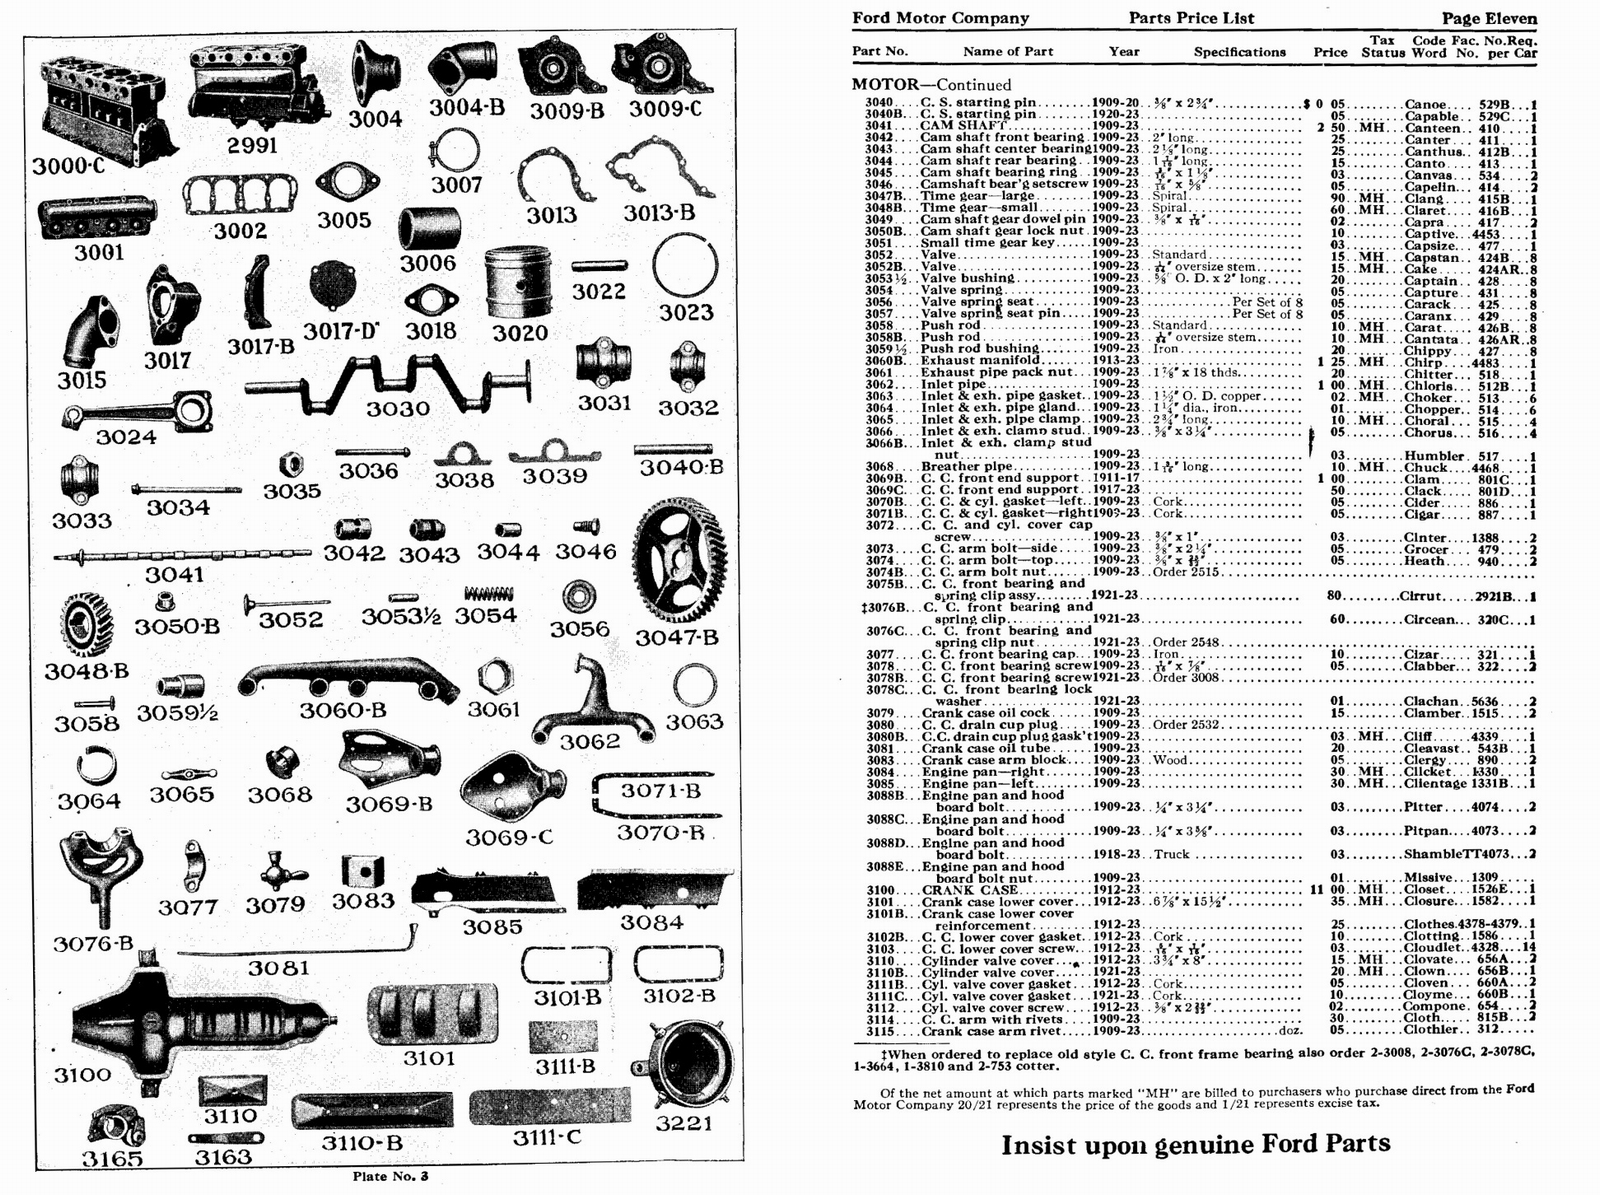 n_1923 Ford Price List-10-11.jpg